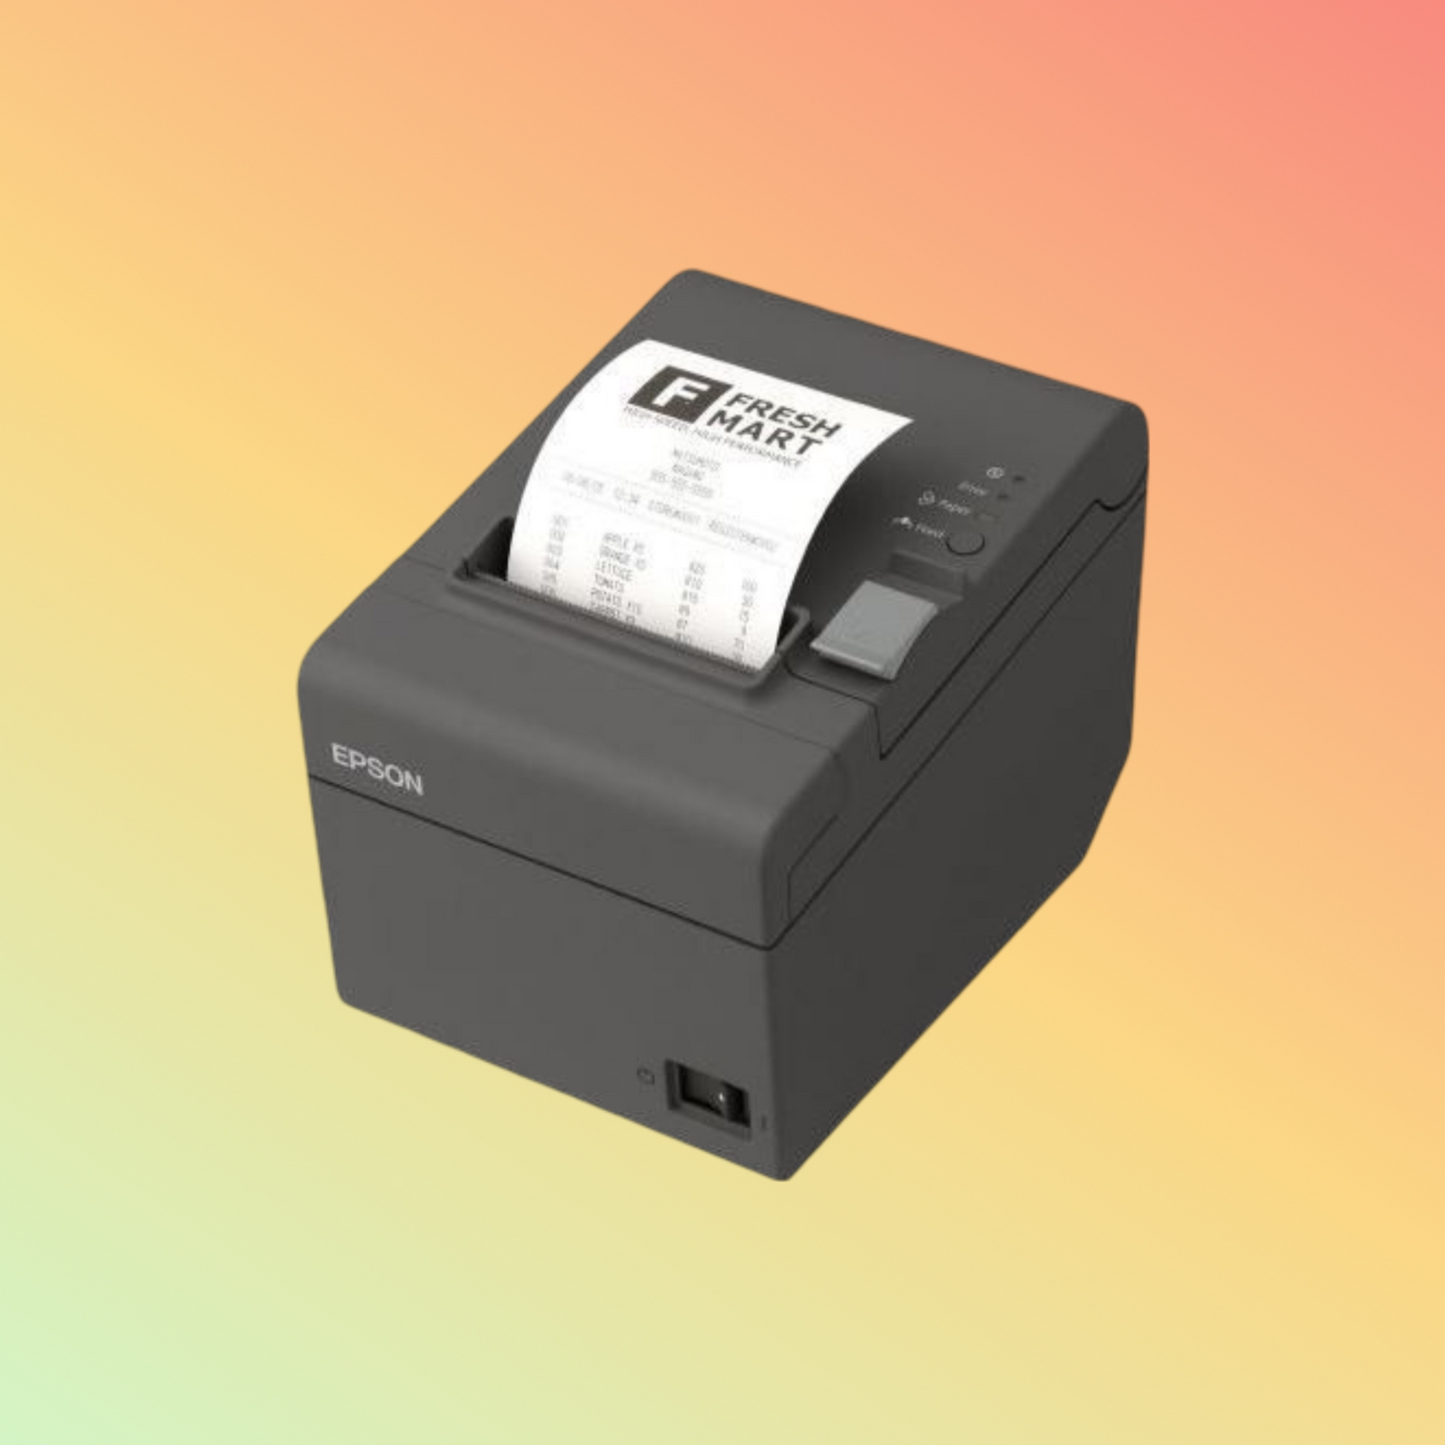 Epson TM-T20III Receipt Printer